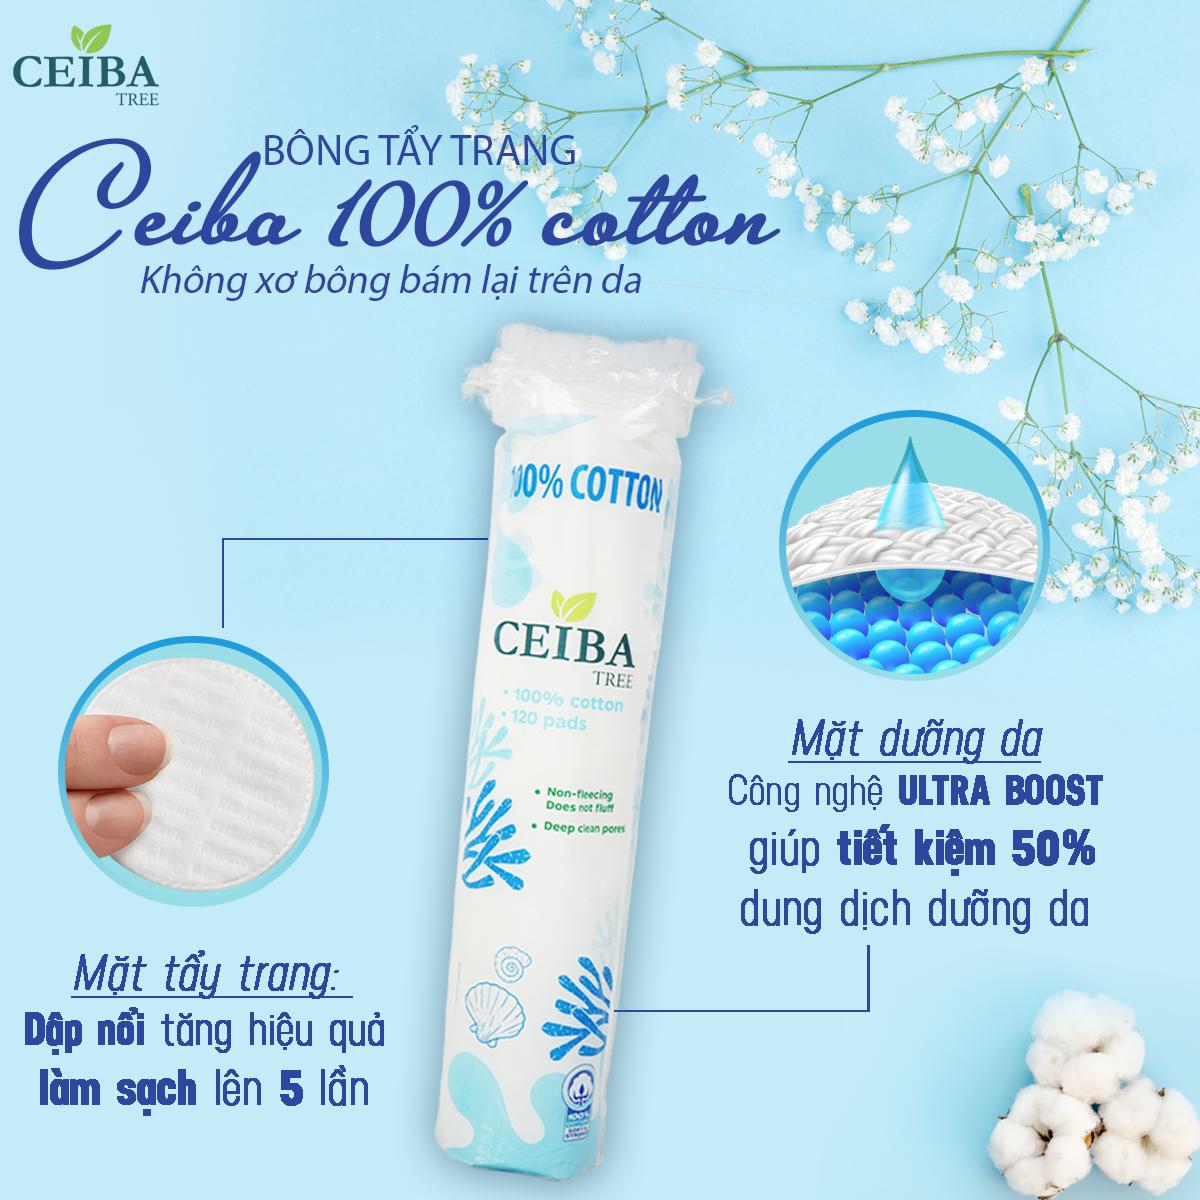 Bông tẩy trang Ceiba chất liệu cotton 1